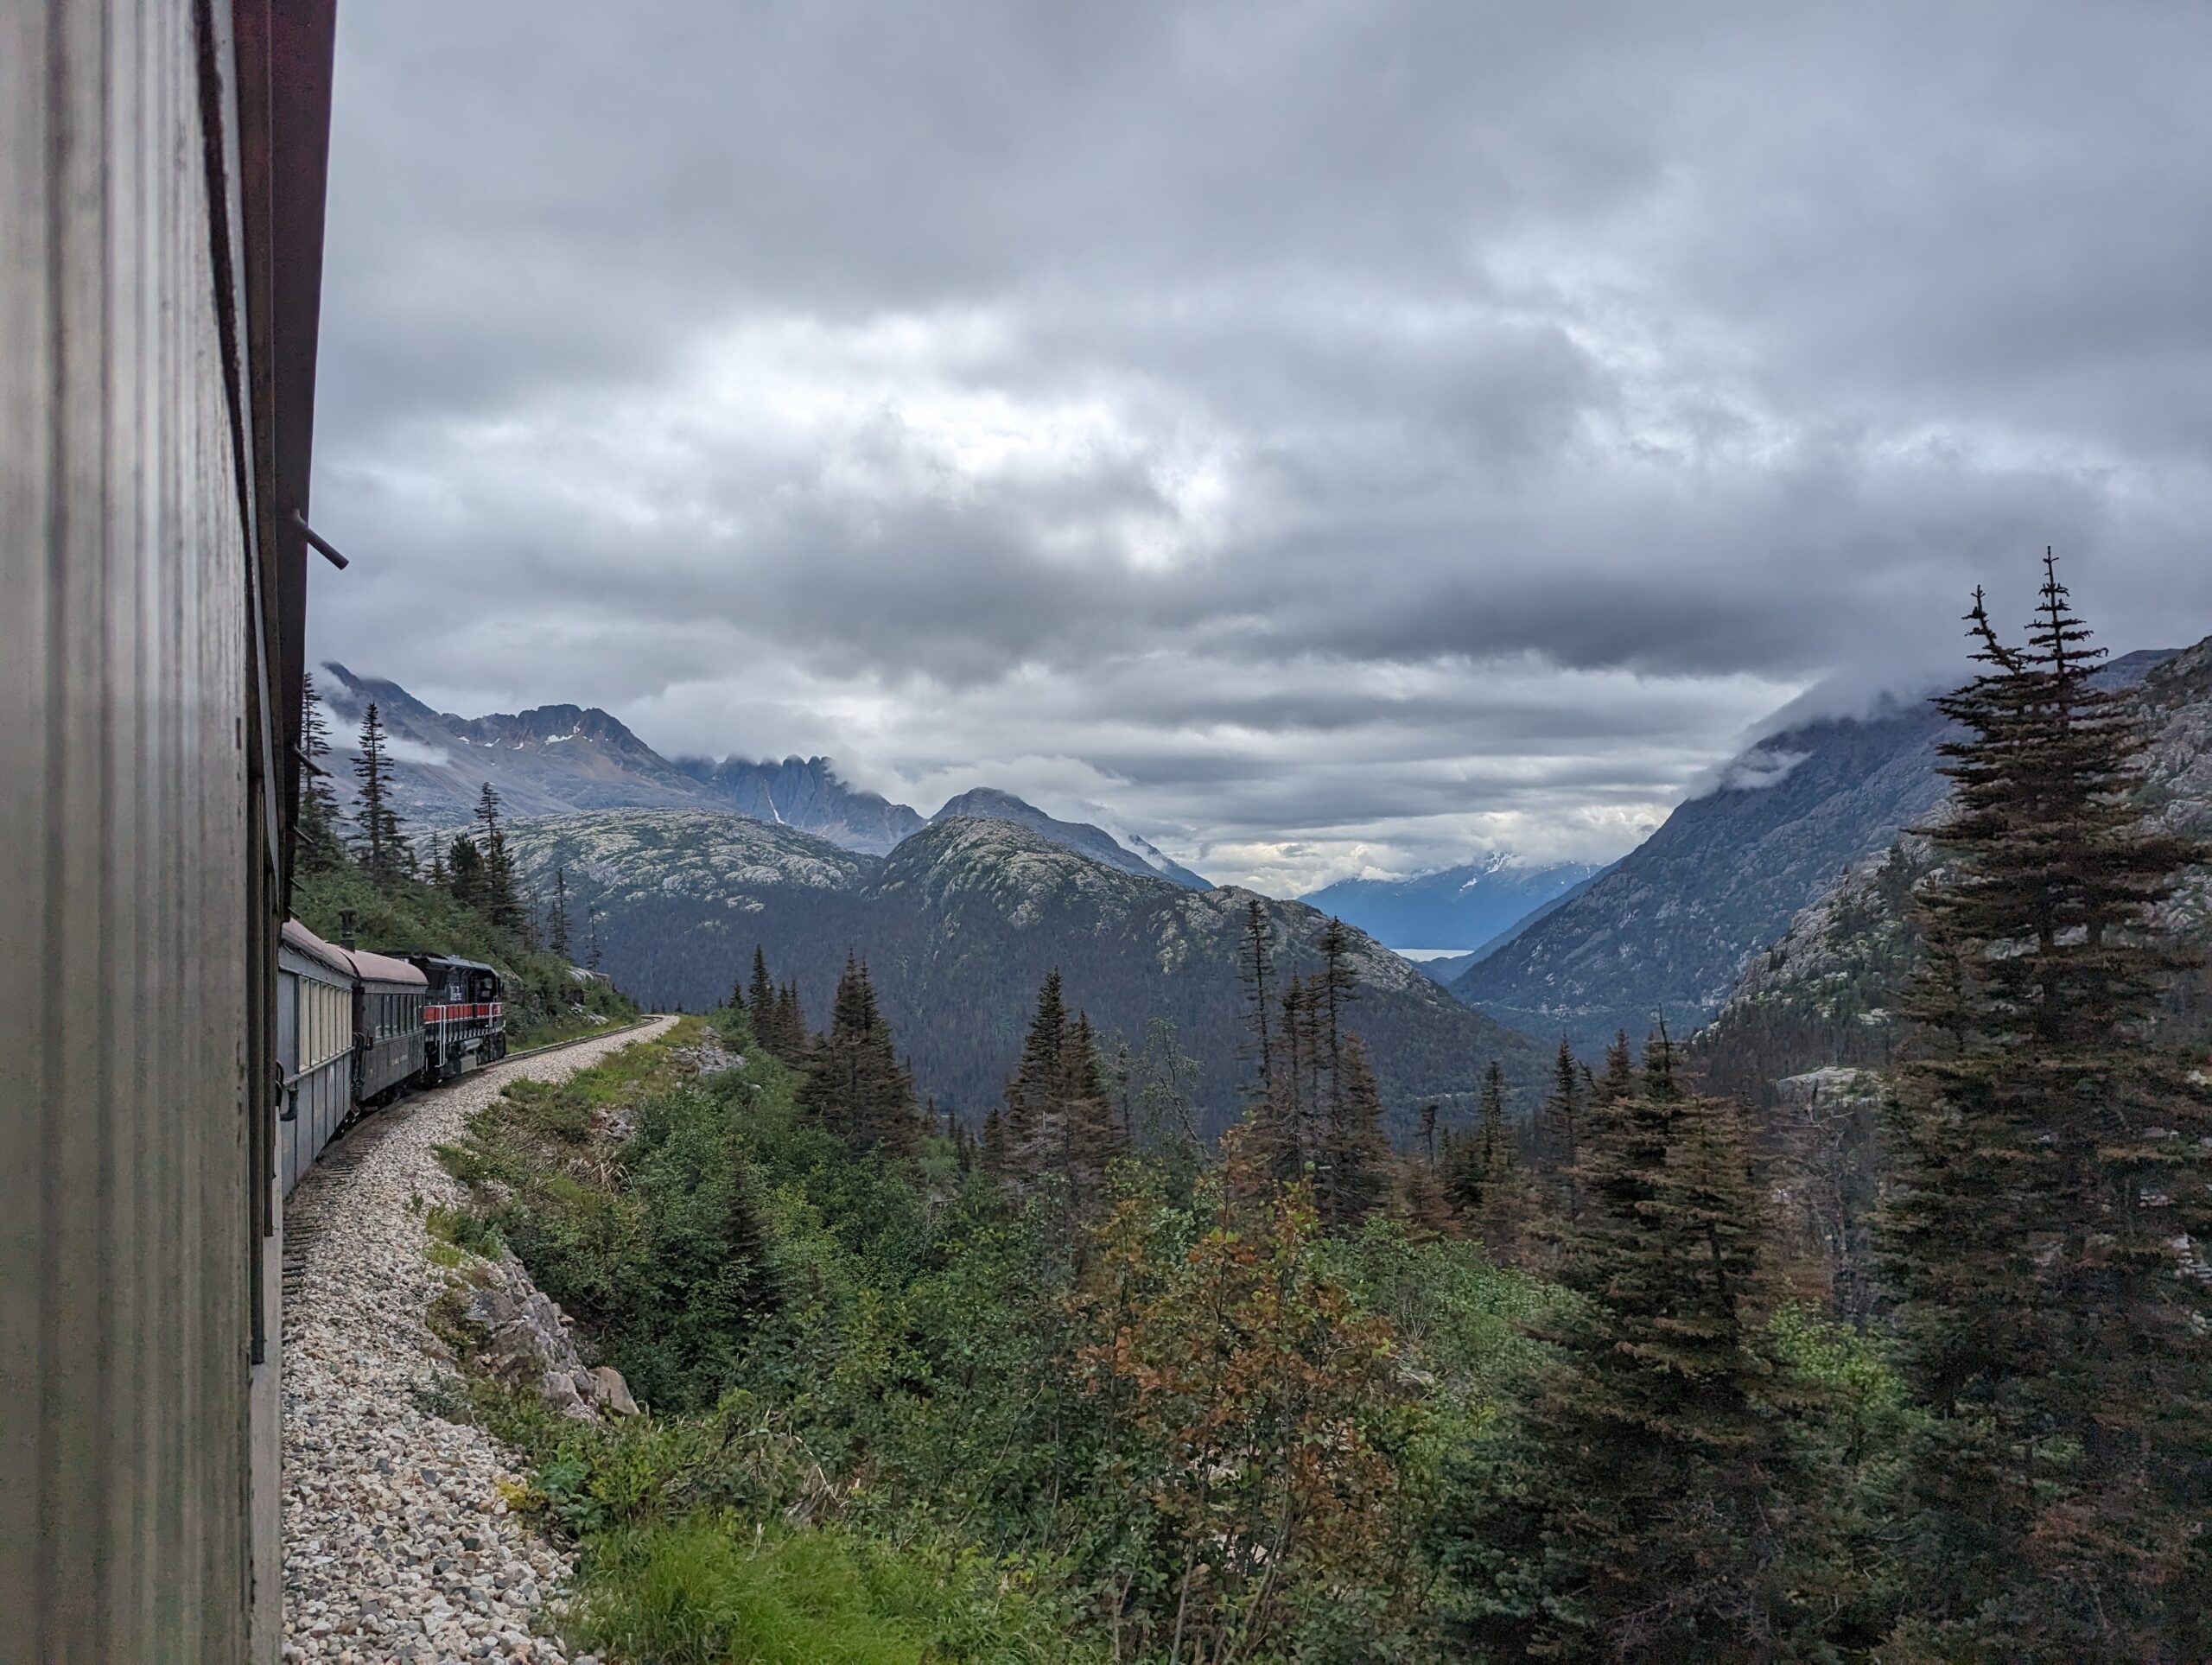 a train going down a mountain